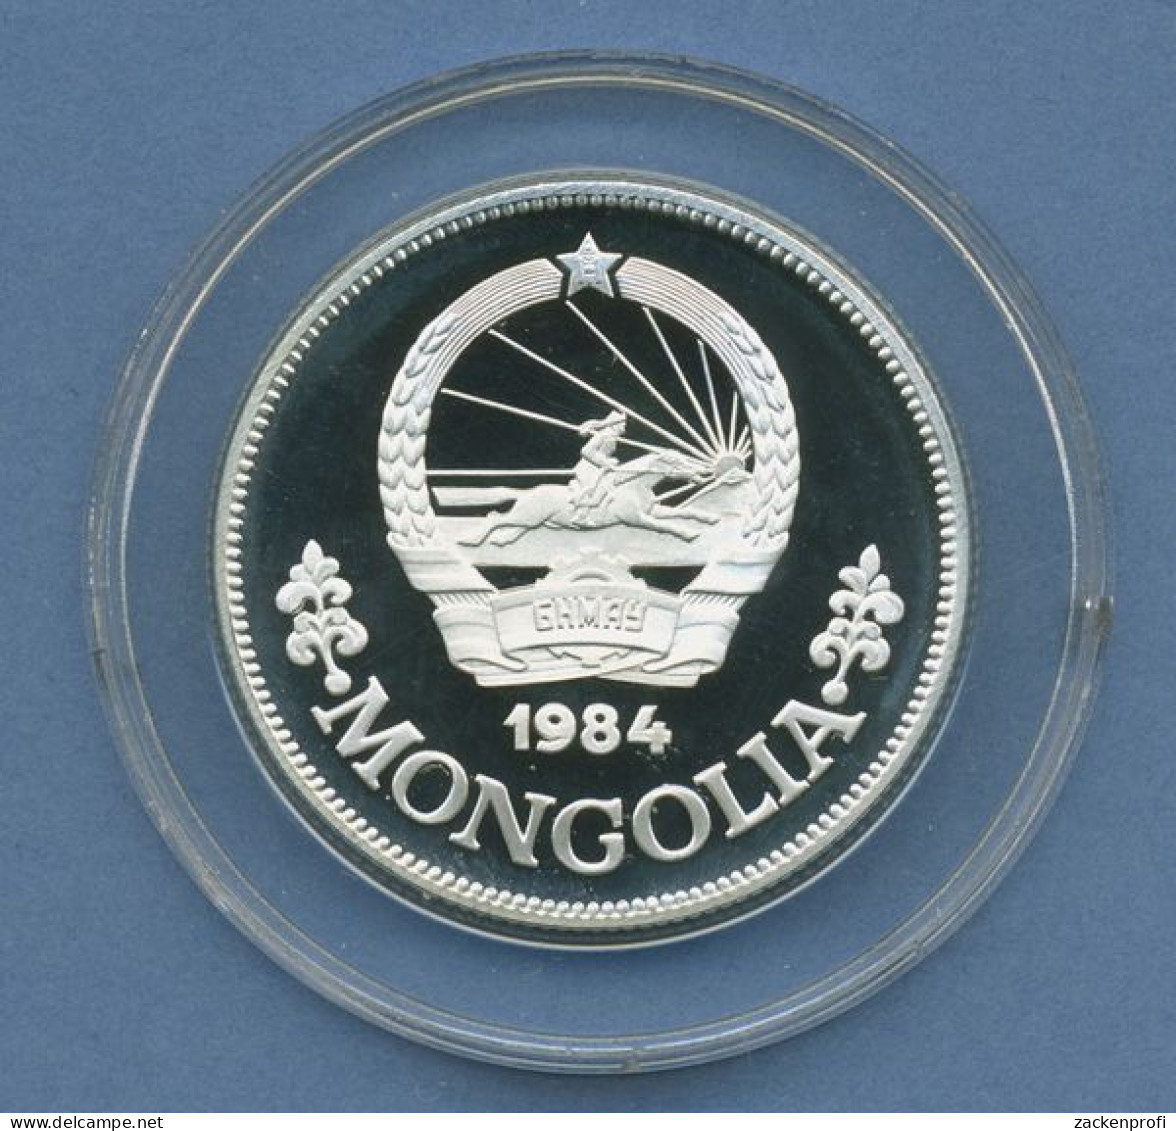 Mongolei 25 Tugrik 1984 Frauendekade Frau, Kind, Silber, KM 47 PP Kapsel (m4379) - Mongolië